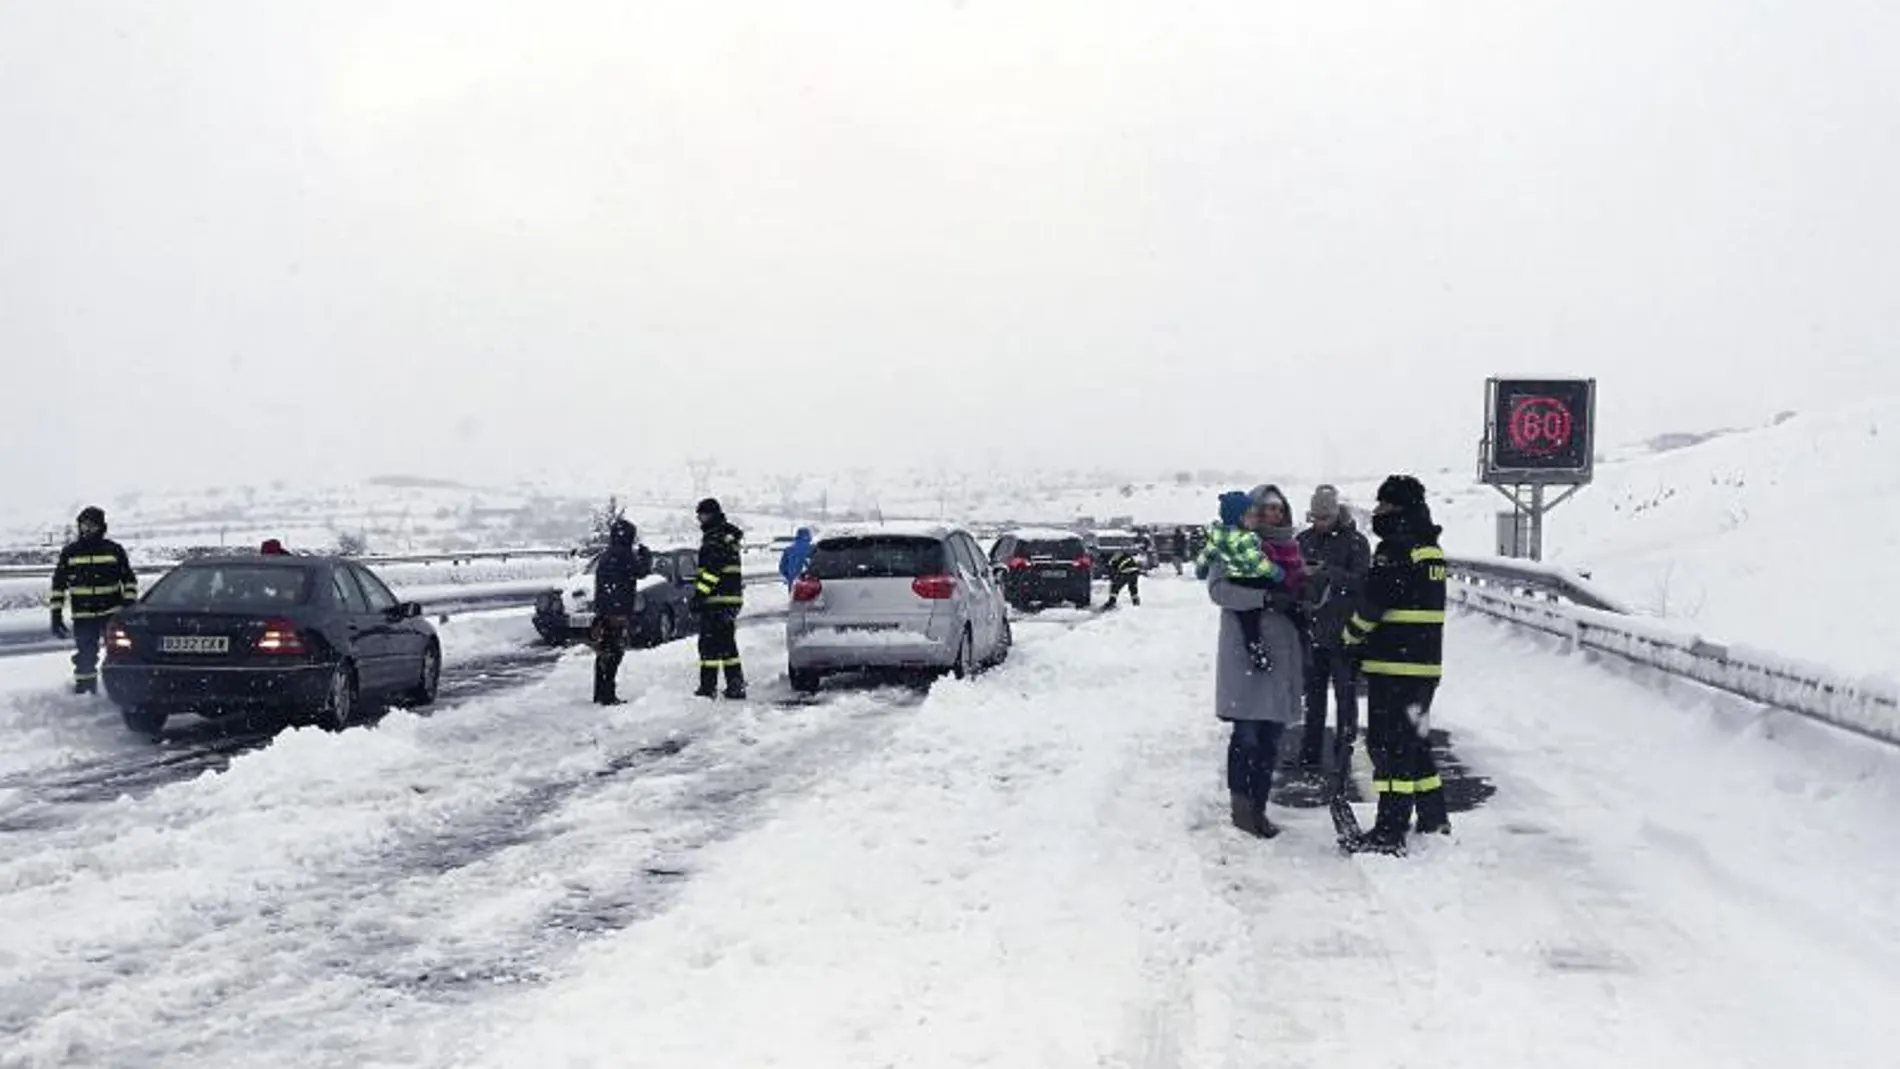 Miembros de la UME ayudan a desbloquear coches atrapados por la nieve